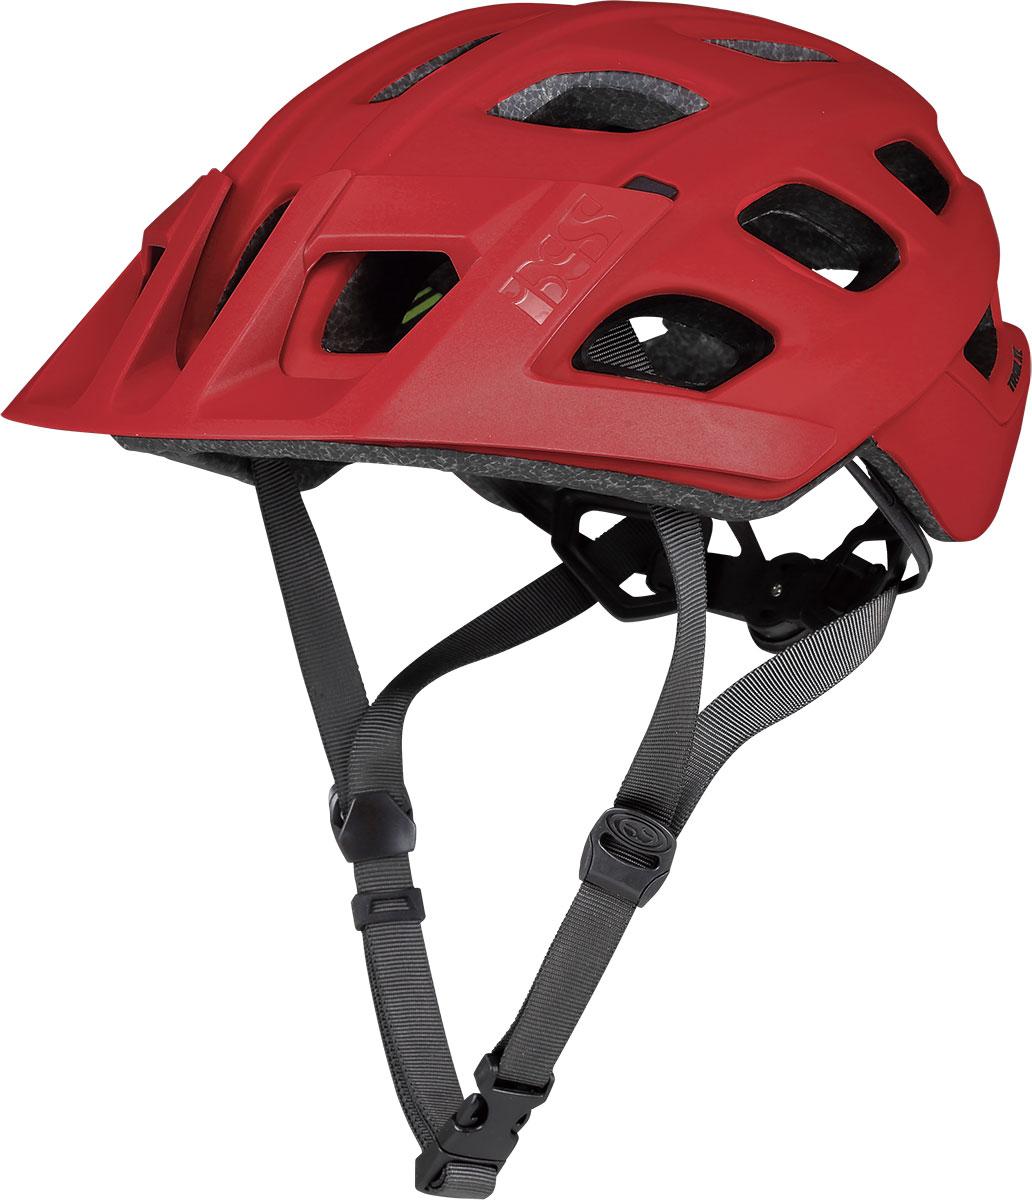 Ixs Trail Xc Helmet - Fluro Red